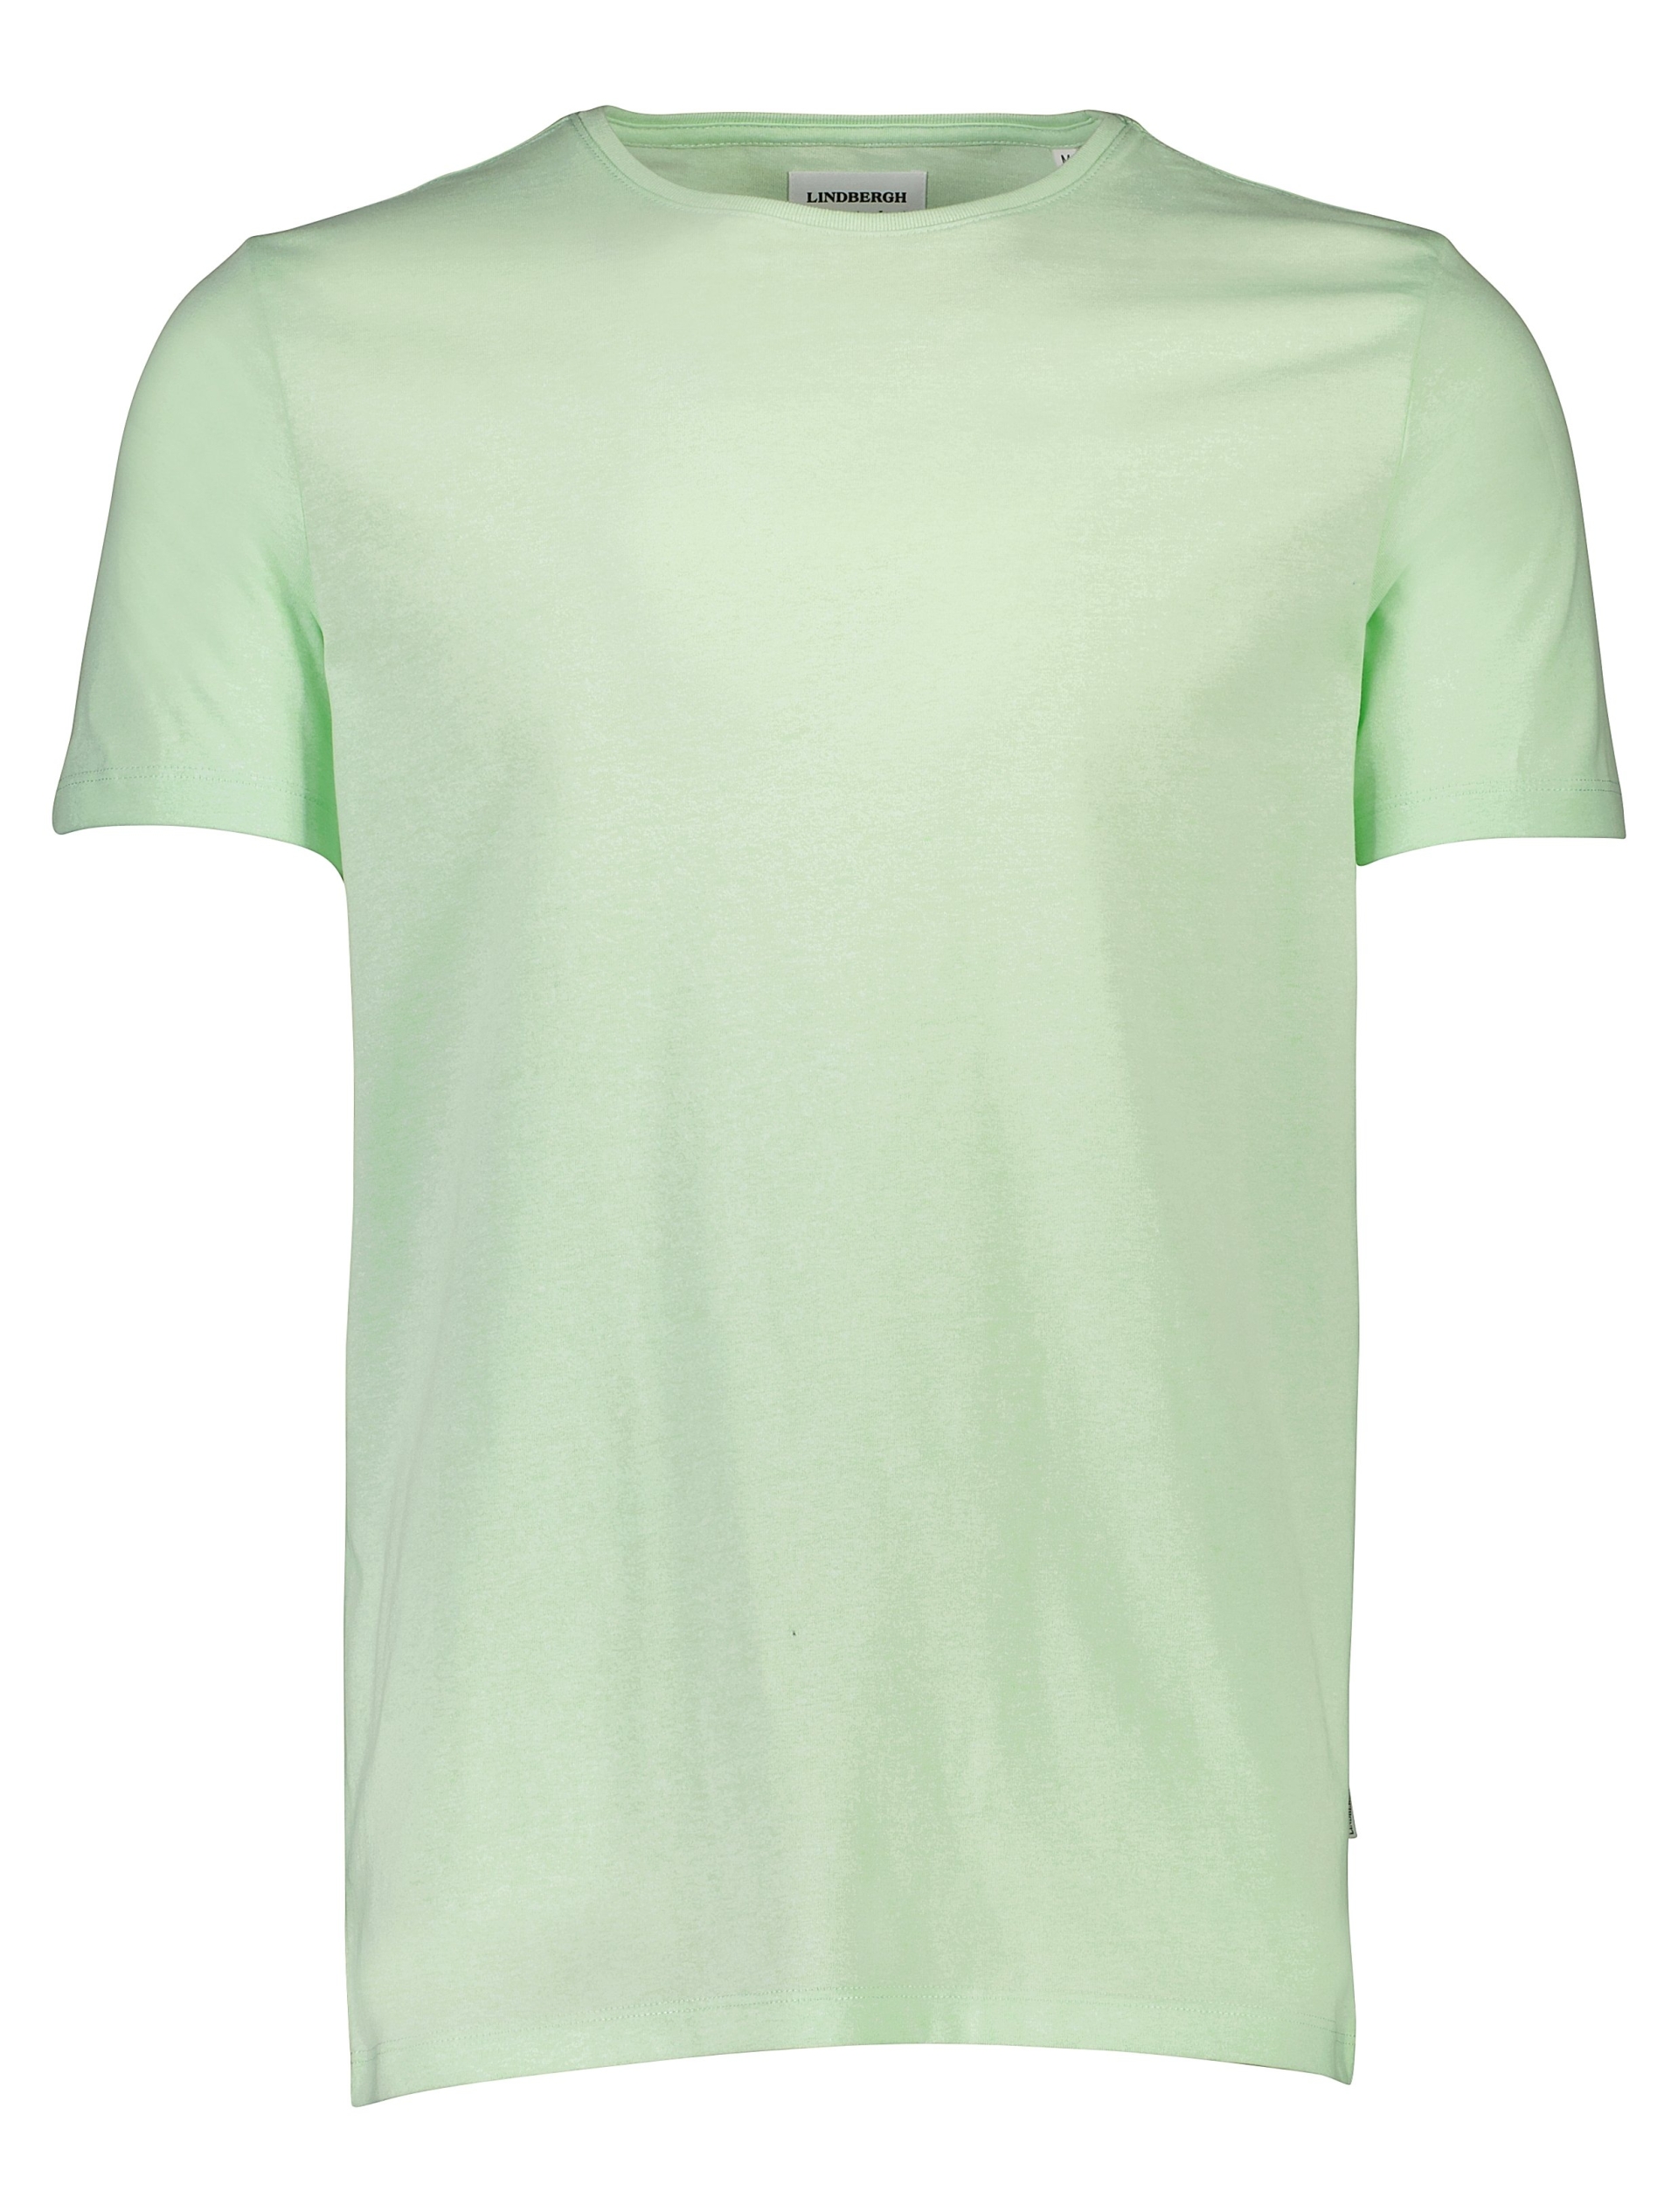 Lindbergh T-shirt grøn / mint mix 224